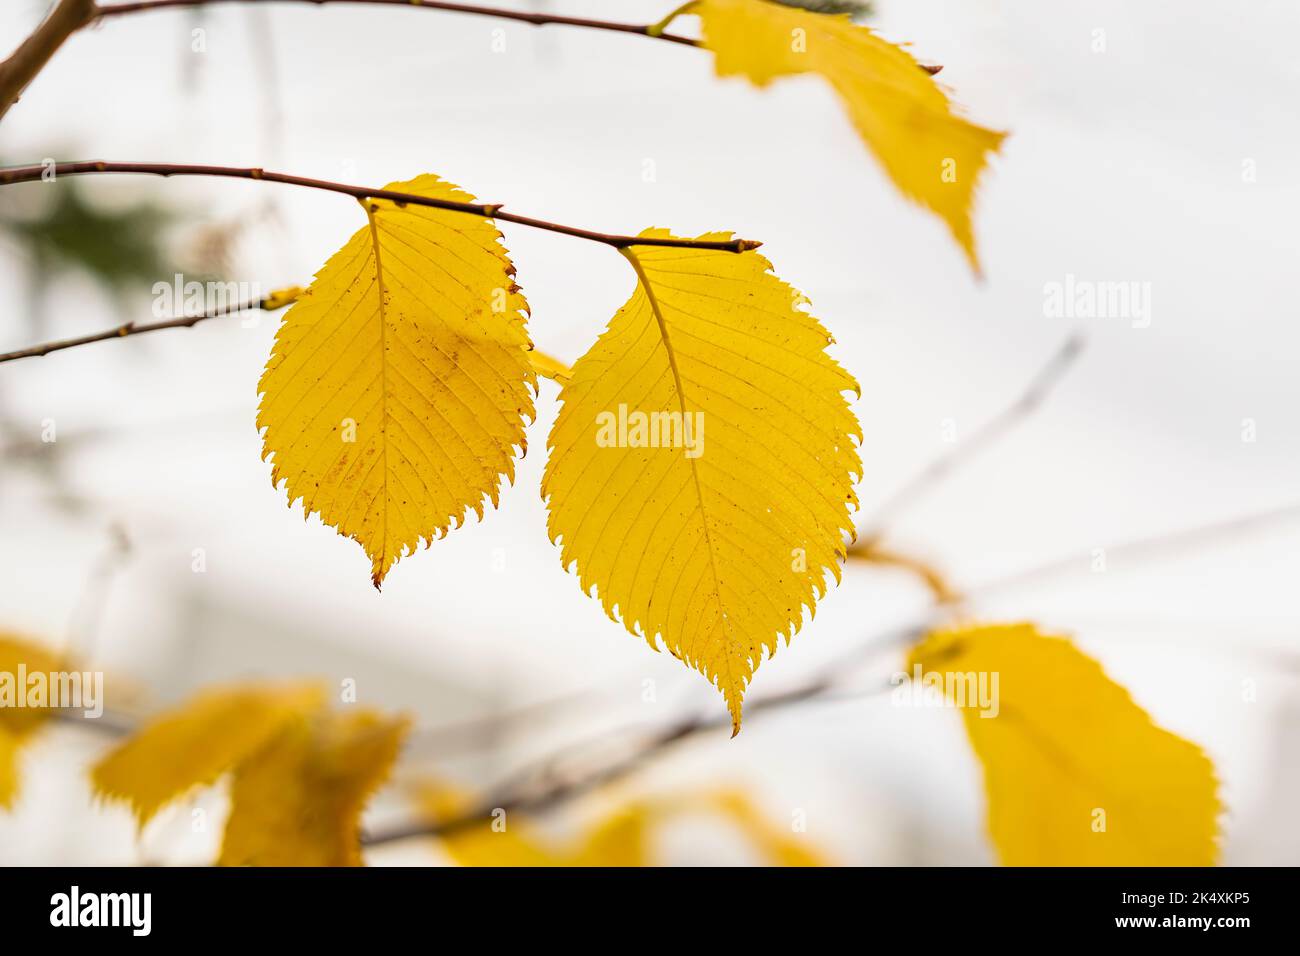 Malerische Baumzweige im Herbst gegen den hellen Himmel, Konzept des Herbstes Stockfoto